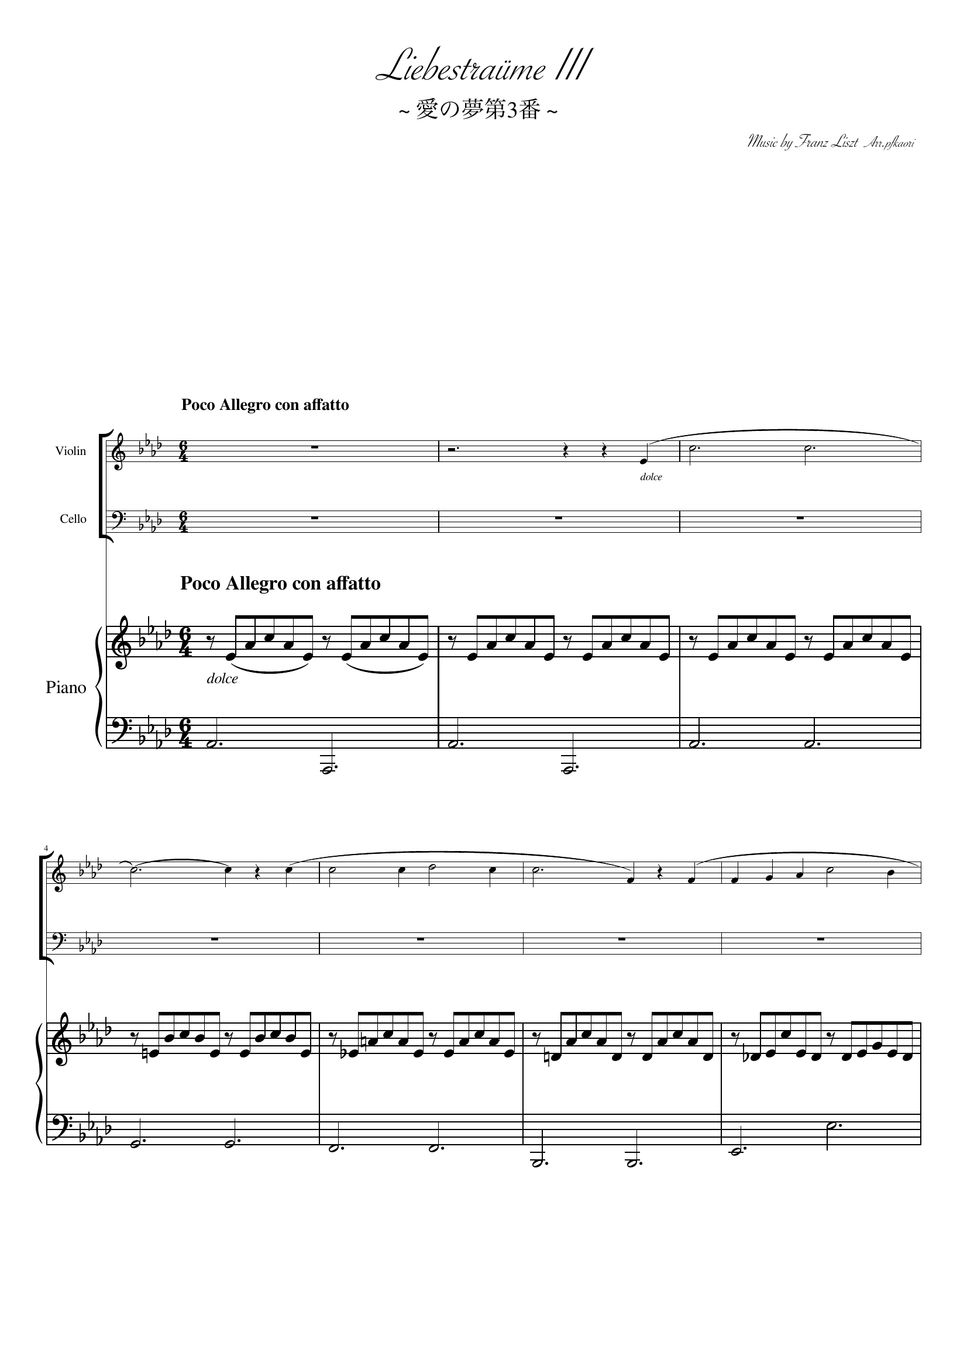 フランツ・リスト - 愛の夢第3番 (As・ピアノトリオ/ヴァイオリン&チェロ) by pfkaori